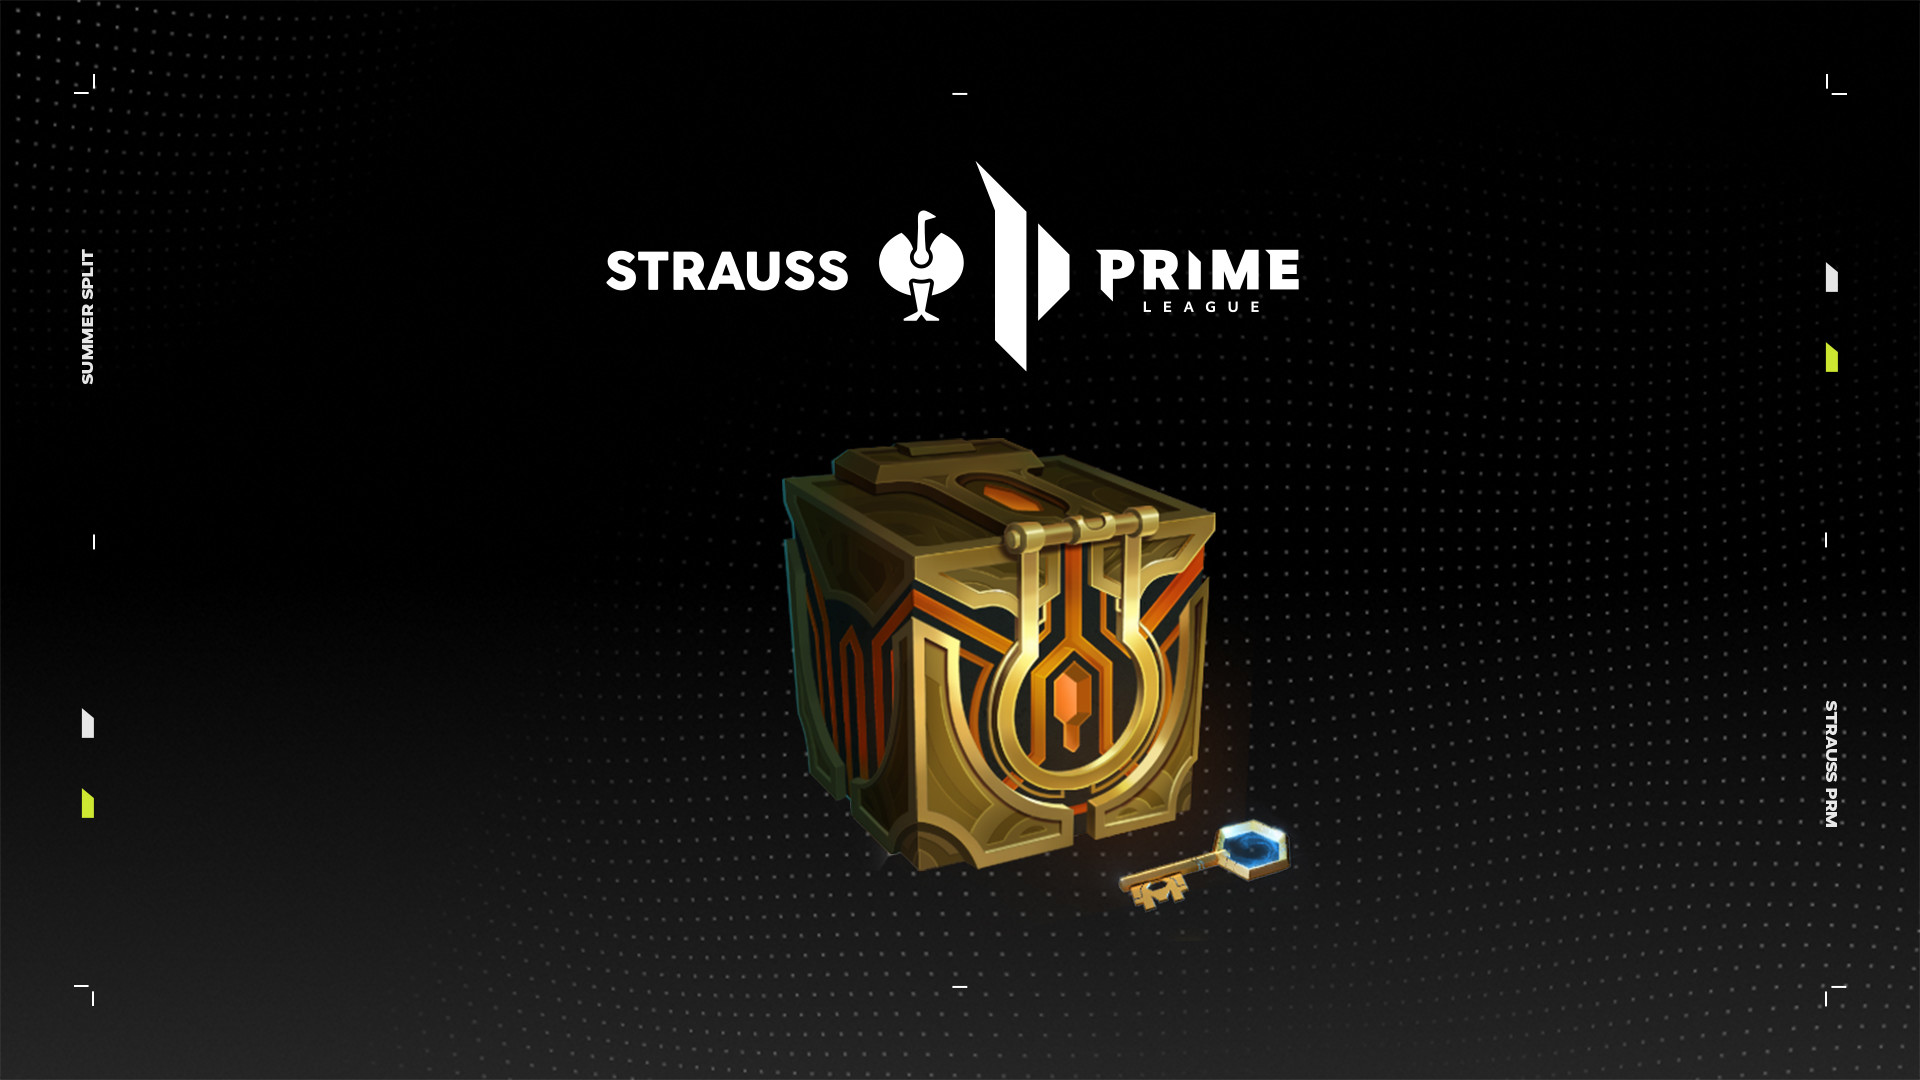 Das Bild zeigt eine Masterwork Chest unter dem Strauss Prime League Logo.